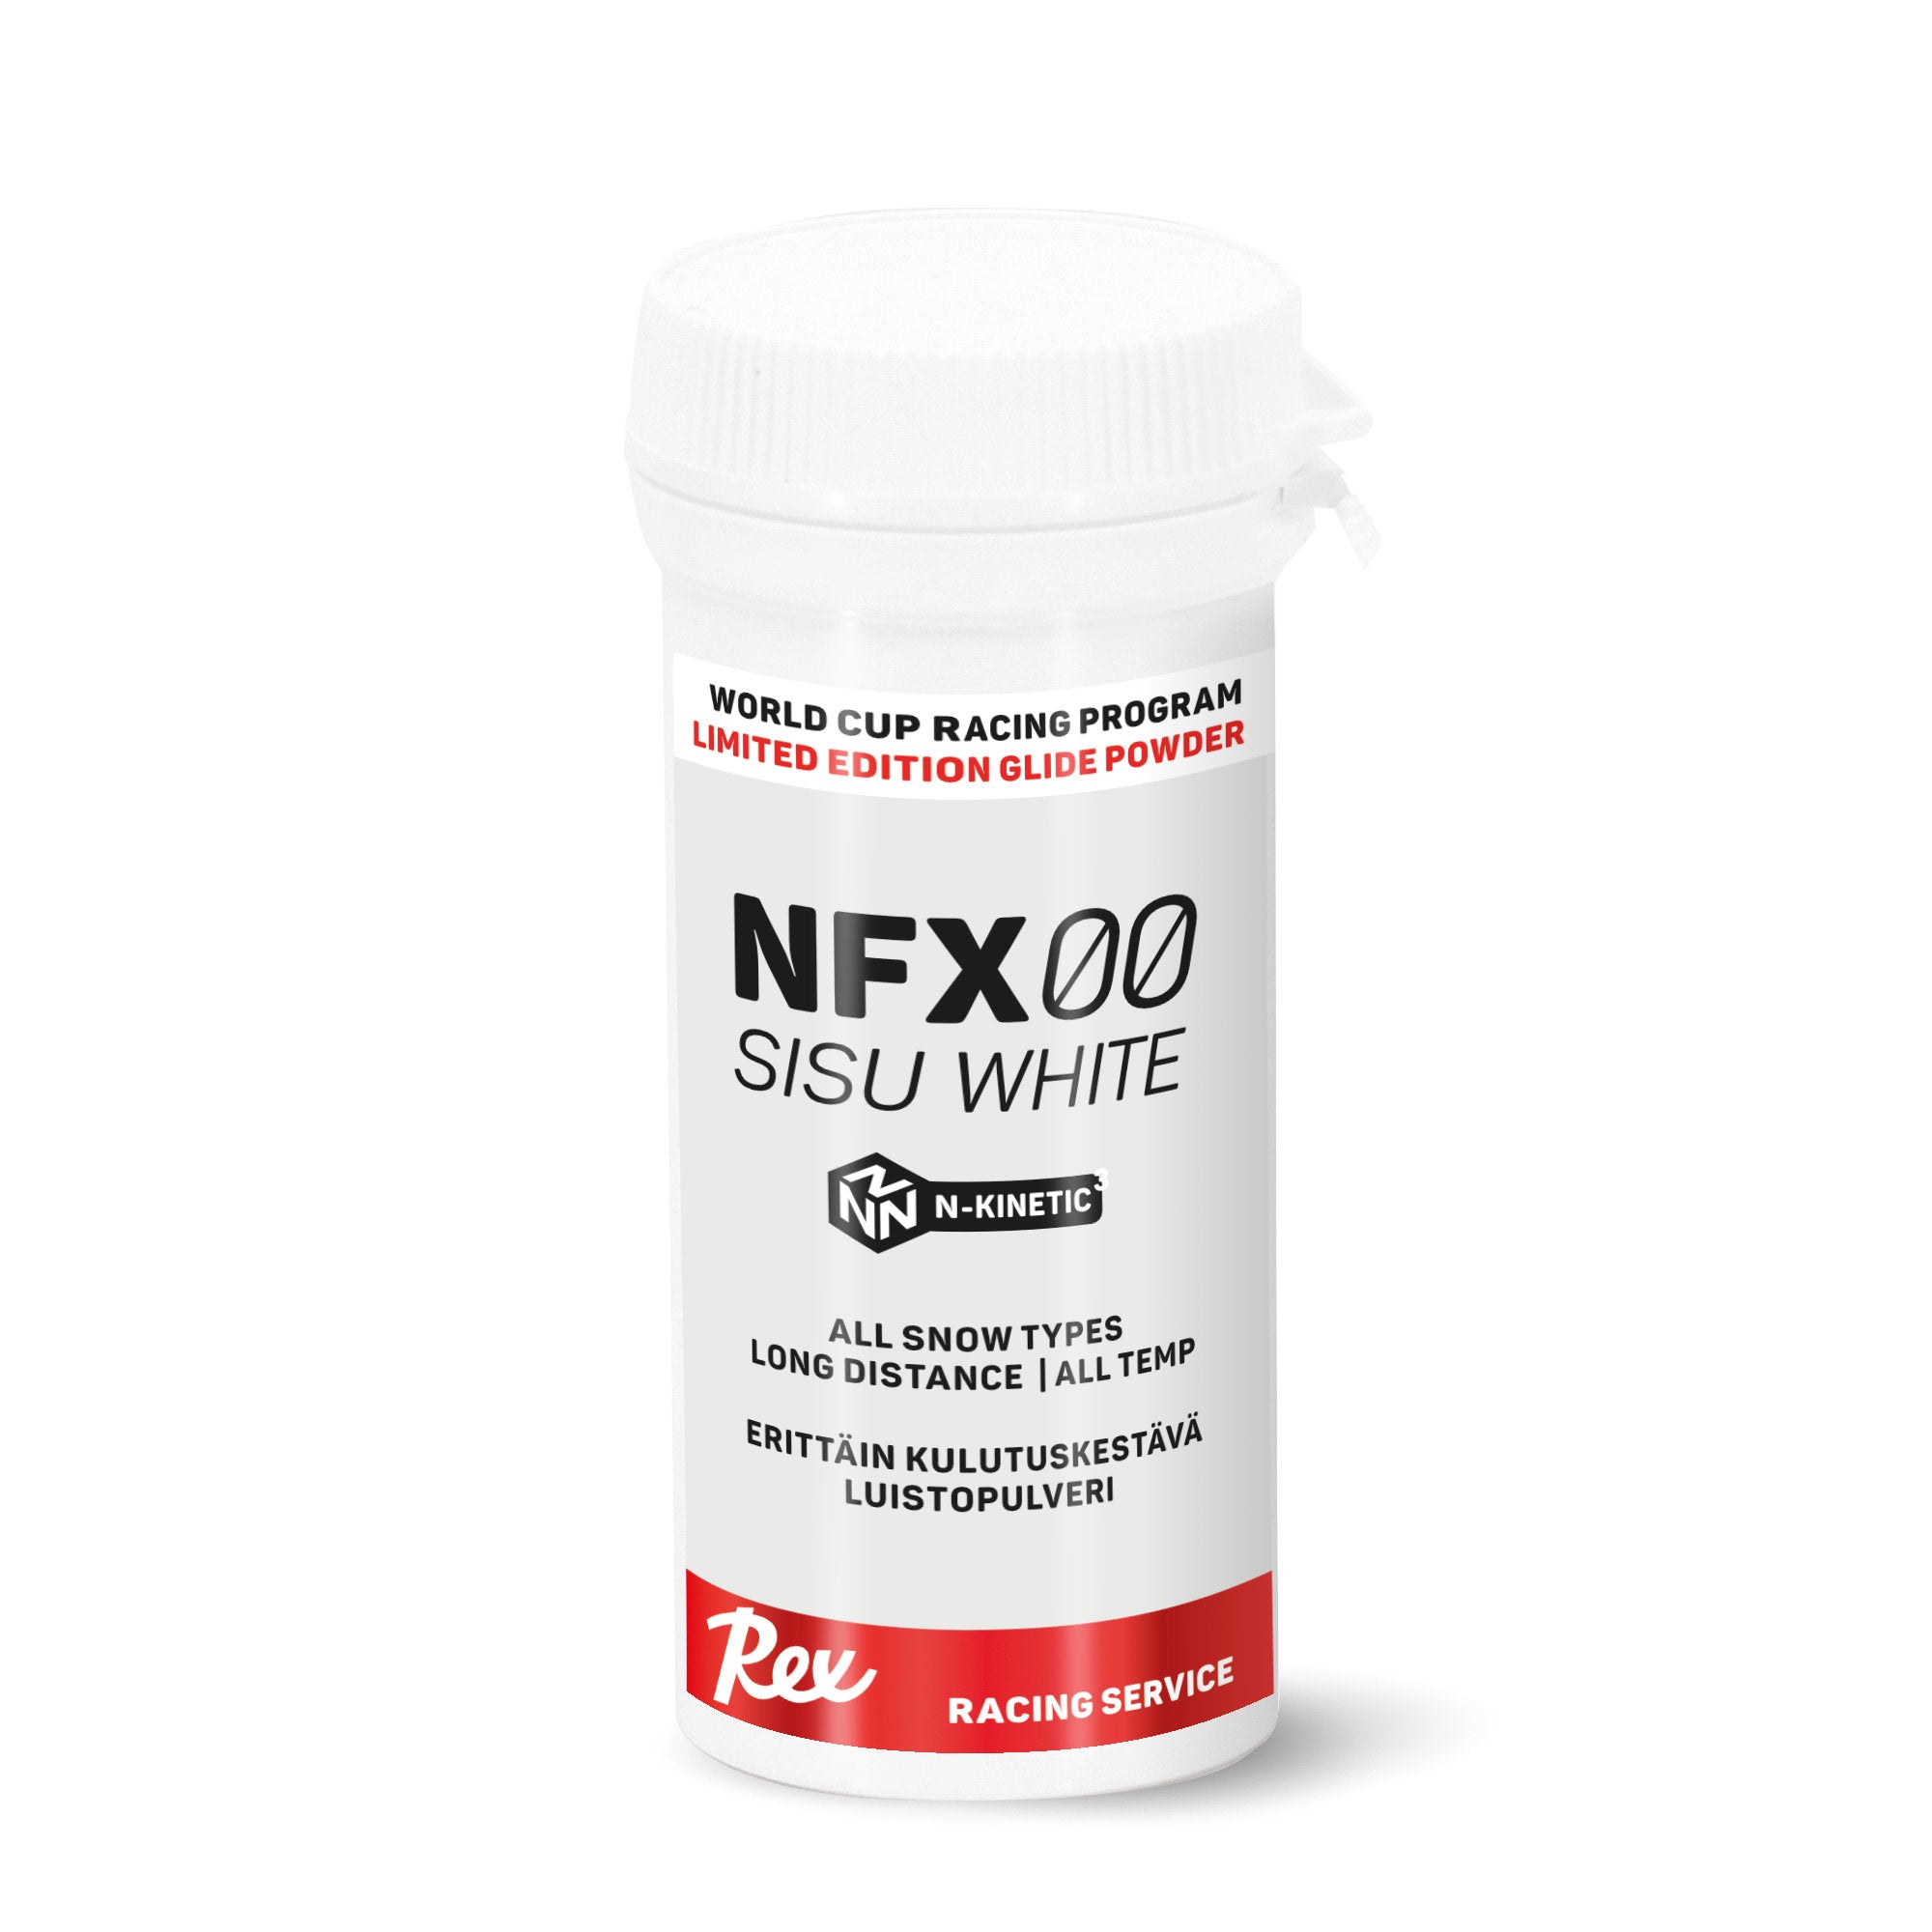 Rex NFX00 Sisu White Powder 20g